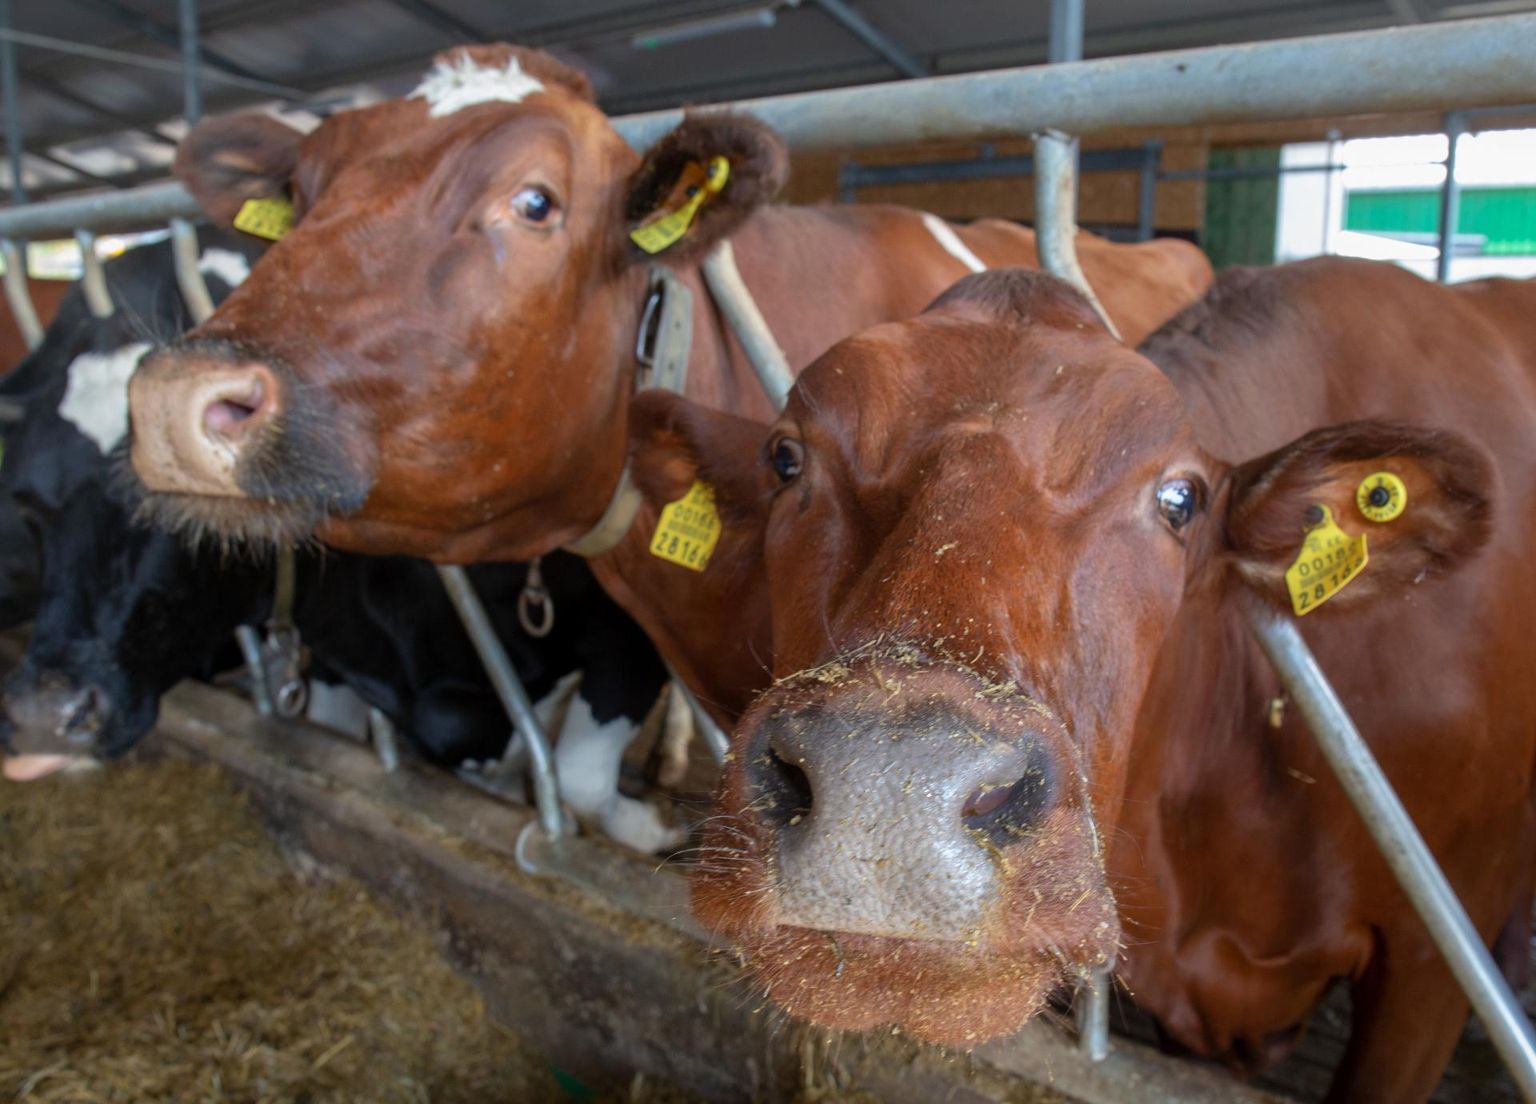 Piimakarjad muutuvad järjest suuremaks, tuues endaga kaasa probleeme, mis on seotud ka looma heaoluga.